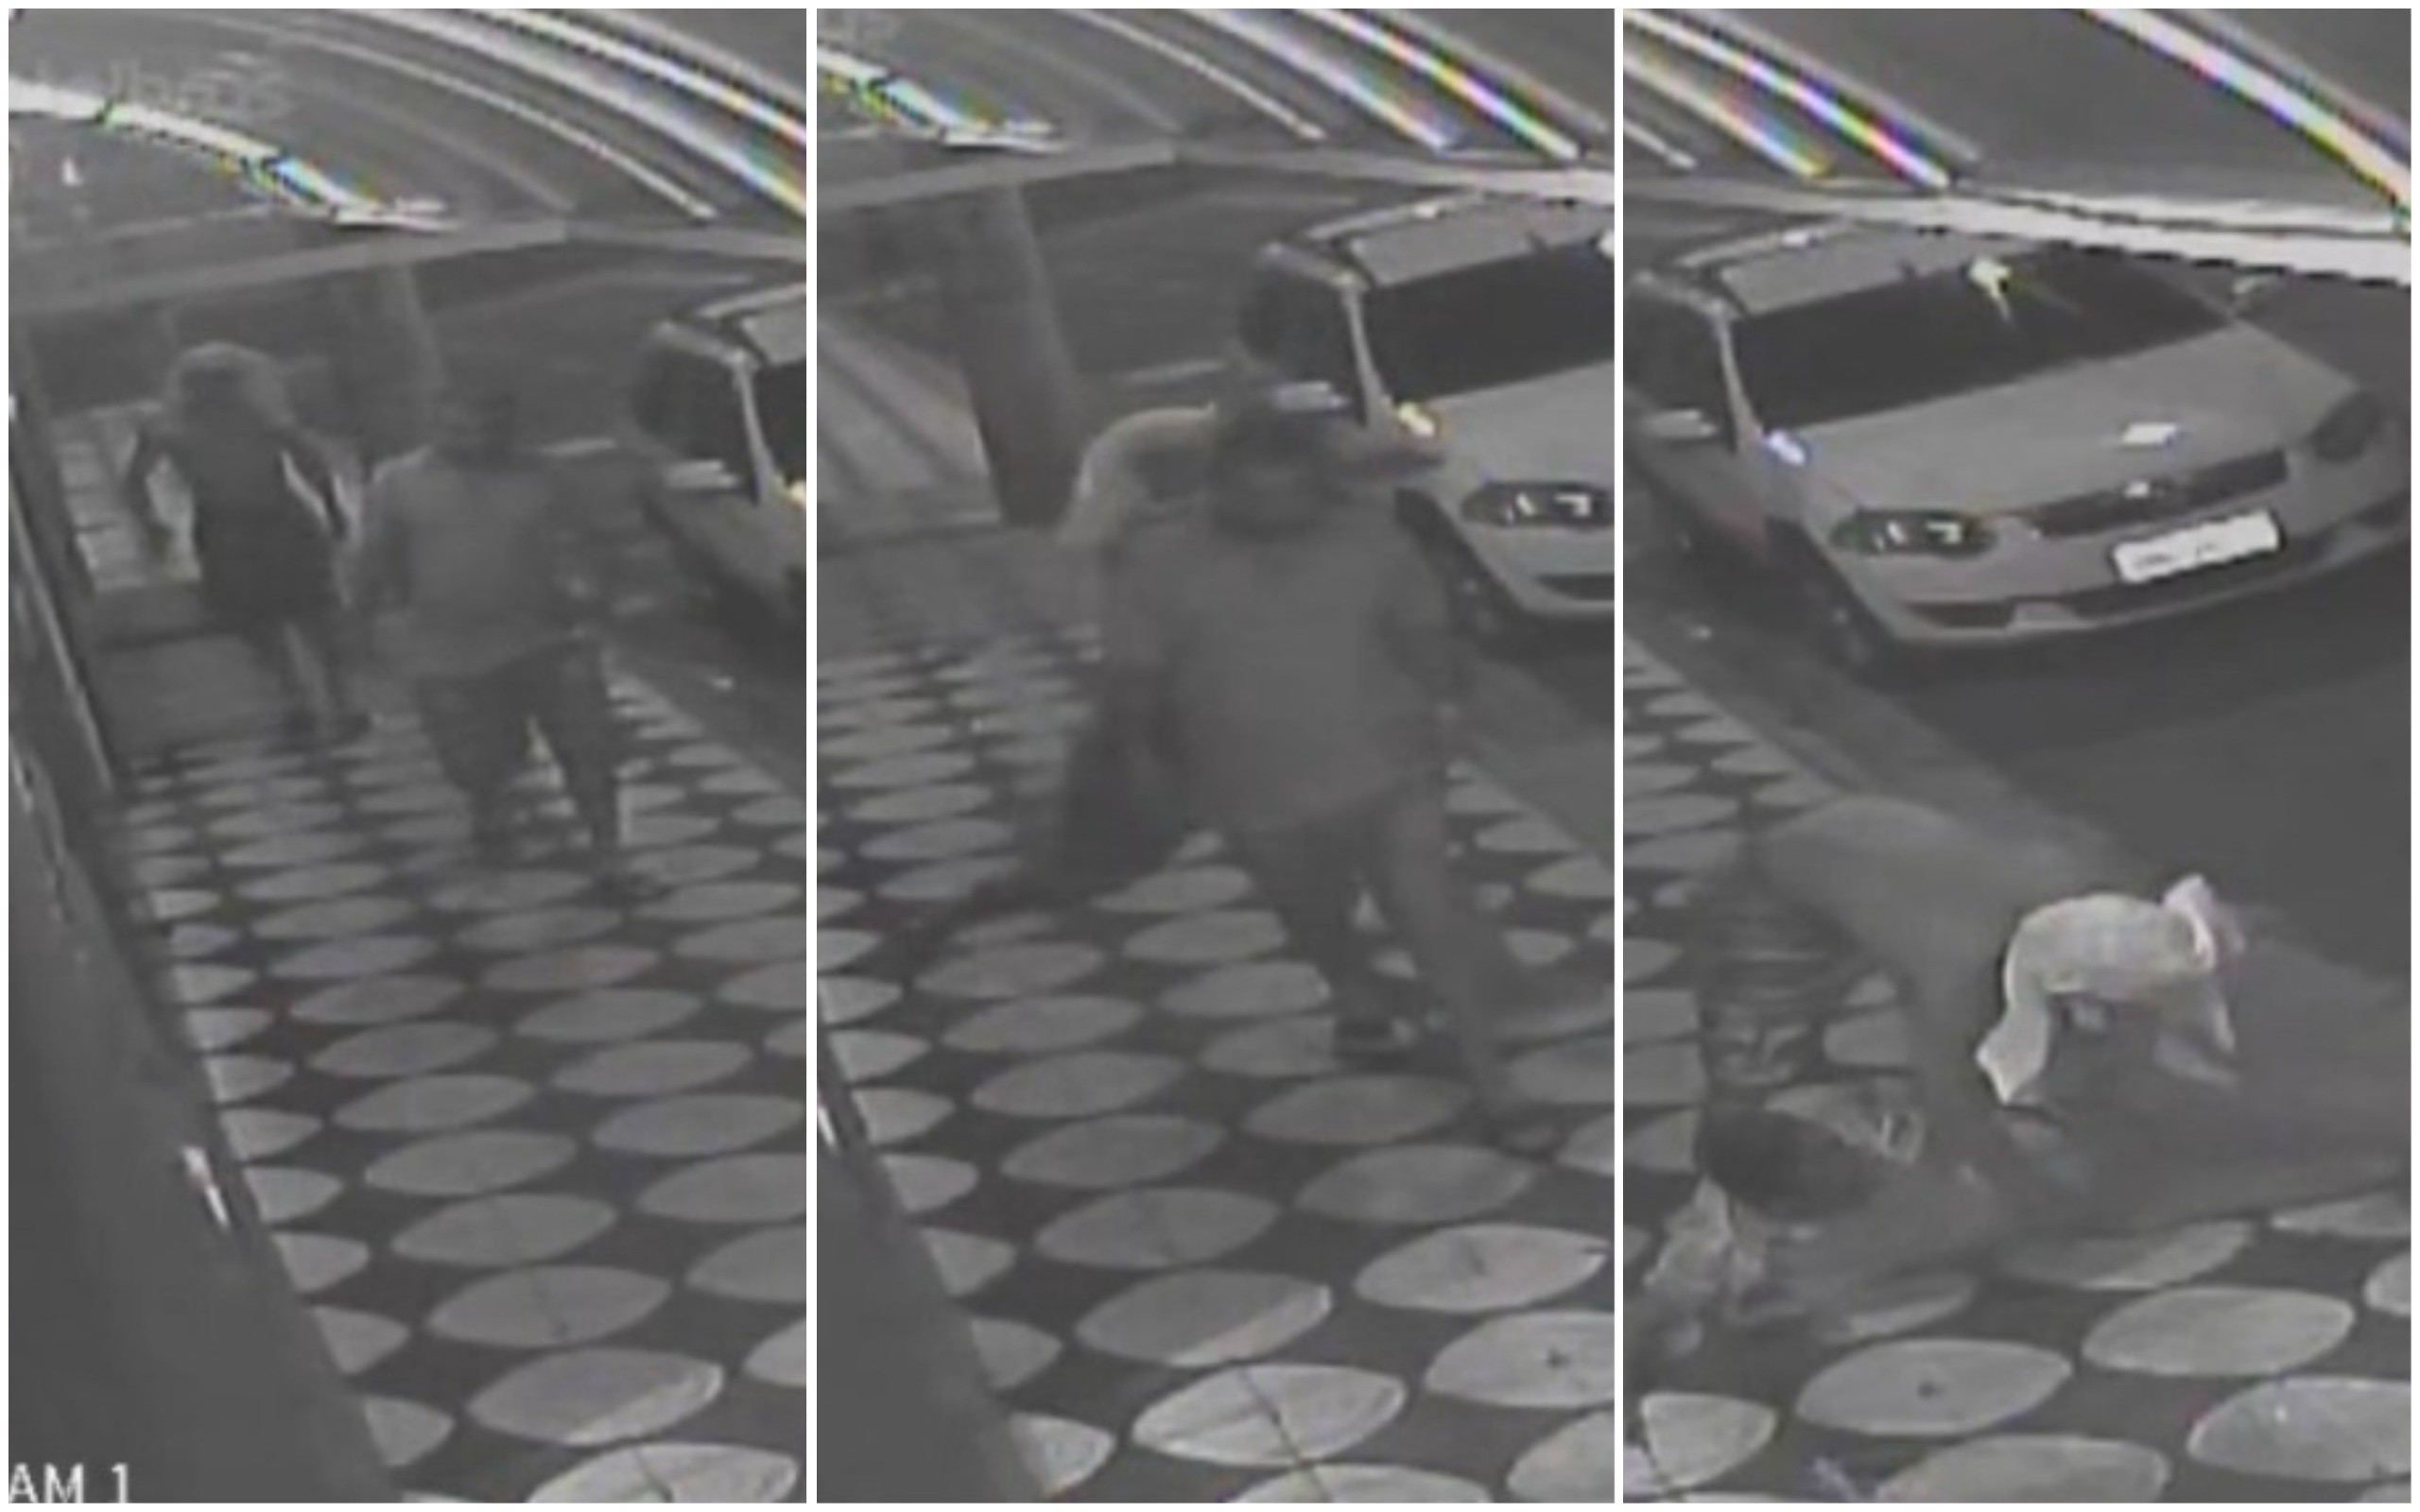 Ladrão dá rasteira e derruba pedestre durante roubo em Sorocaba; vídeo